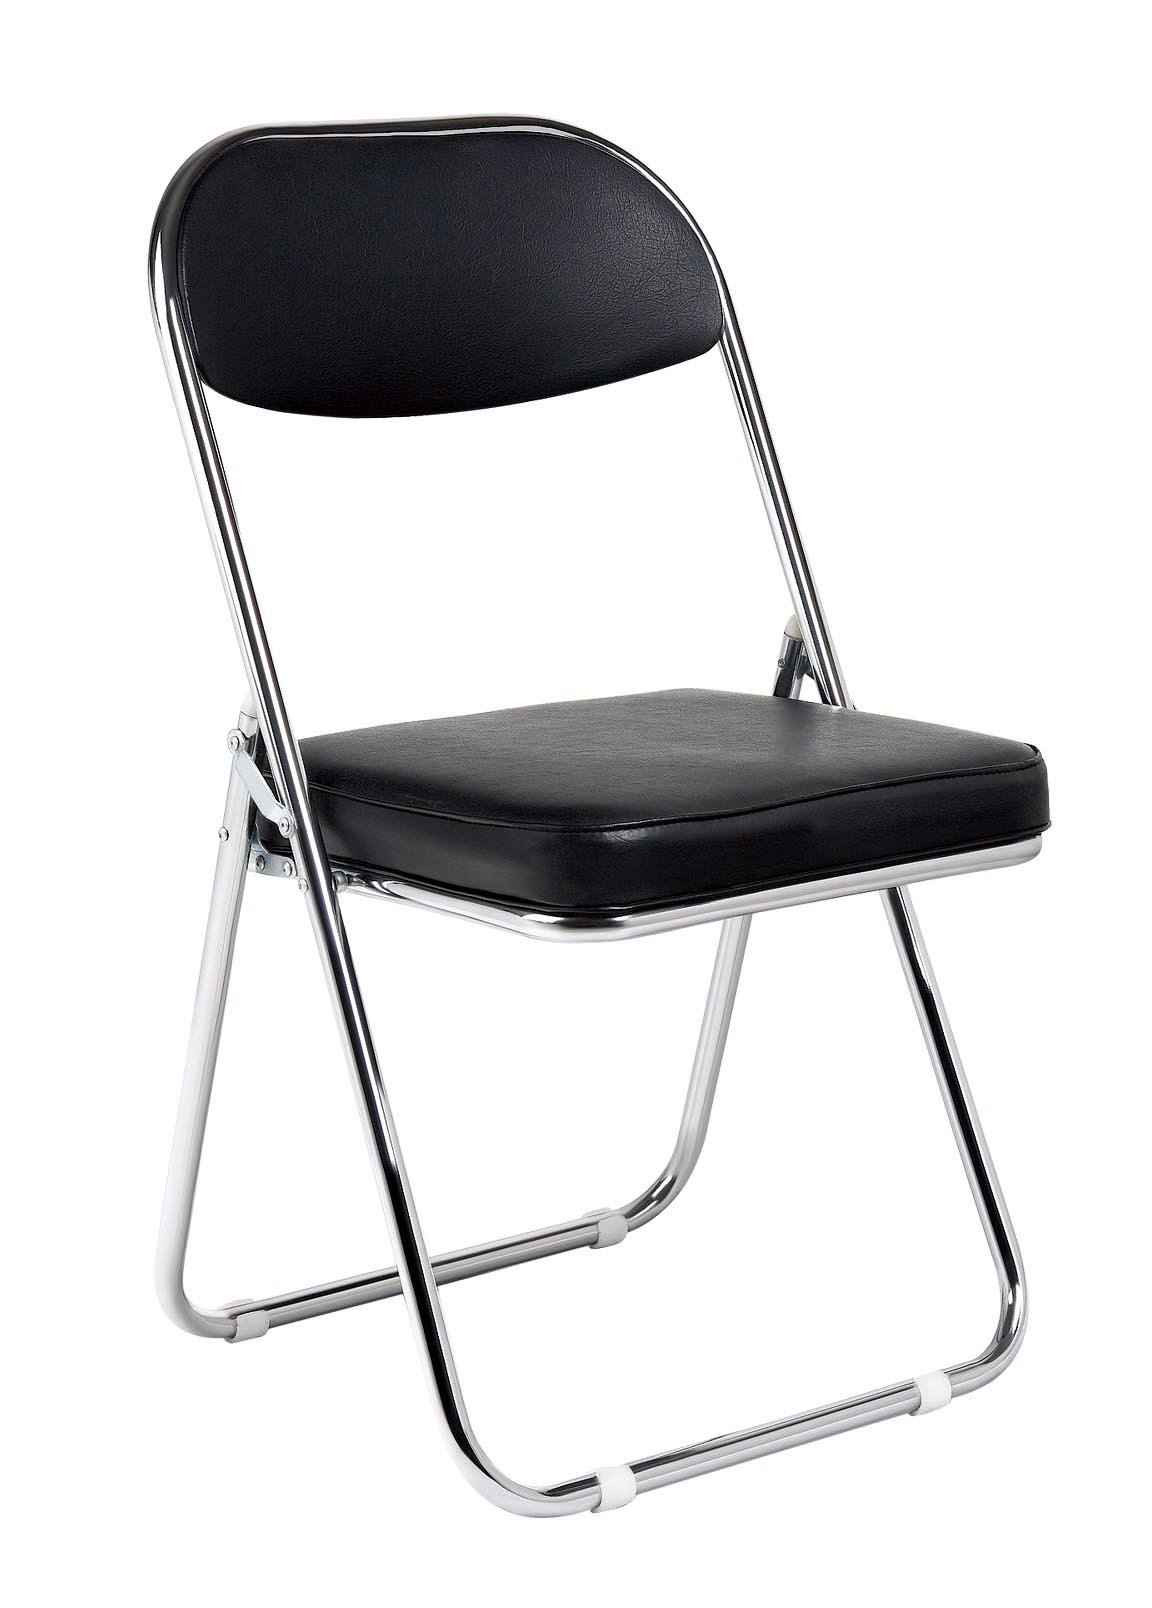 Складной стул для дома. Стул офисный Jack Black черный. Складной стул fd8300250. Стул складной NST Jack Black. Конференц-кресло easy Chair 711 vn.